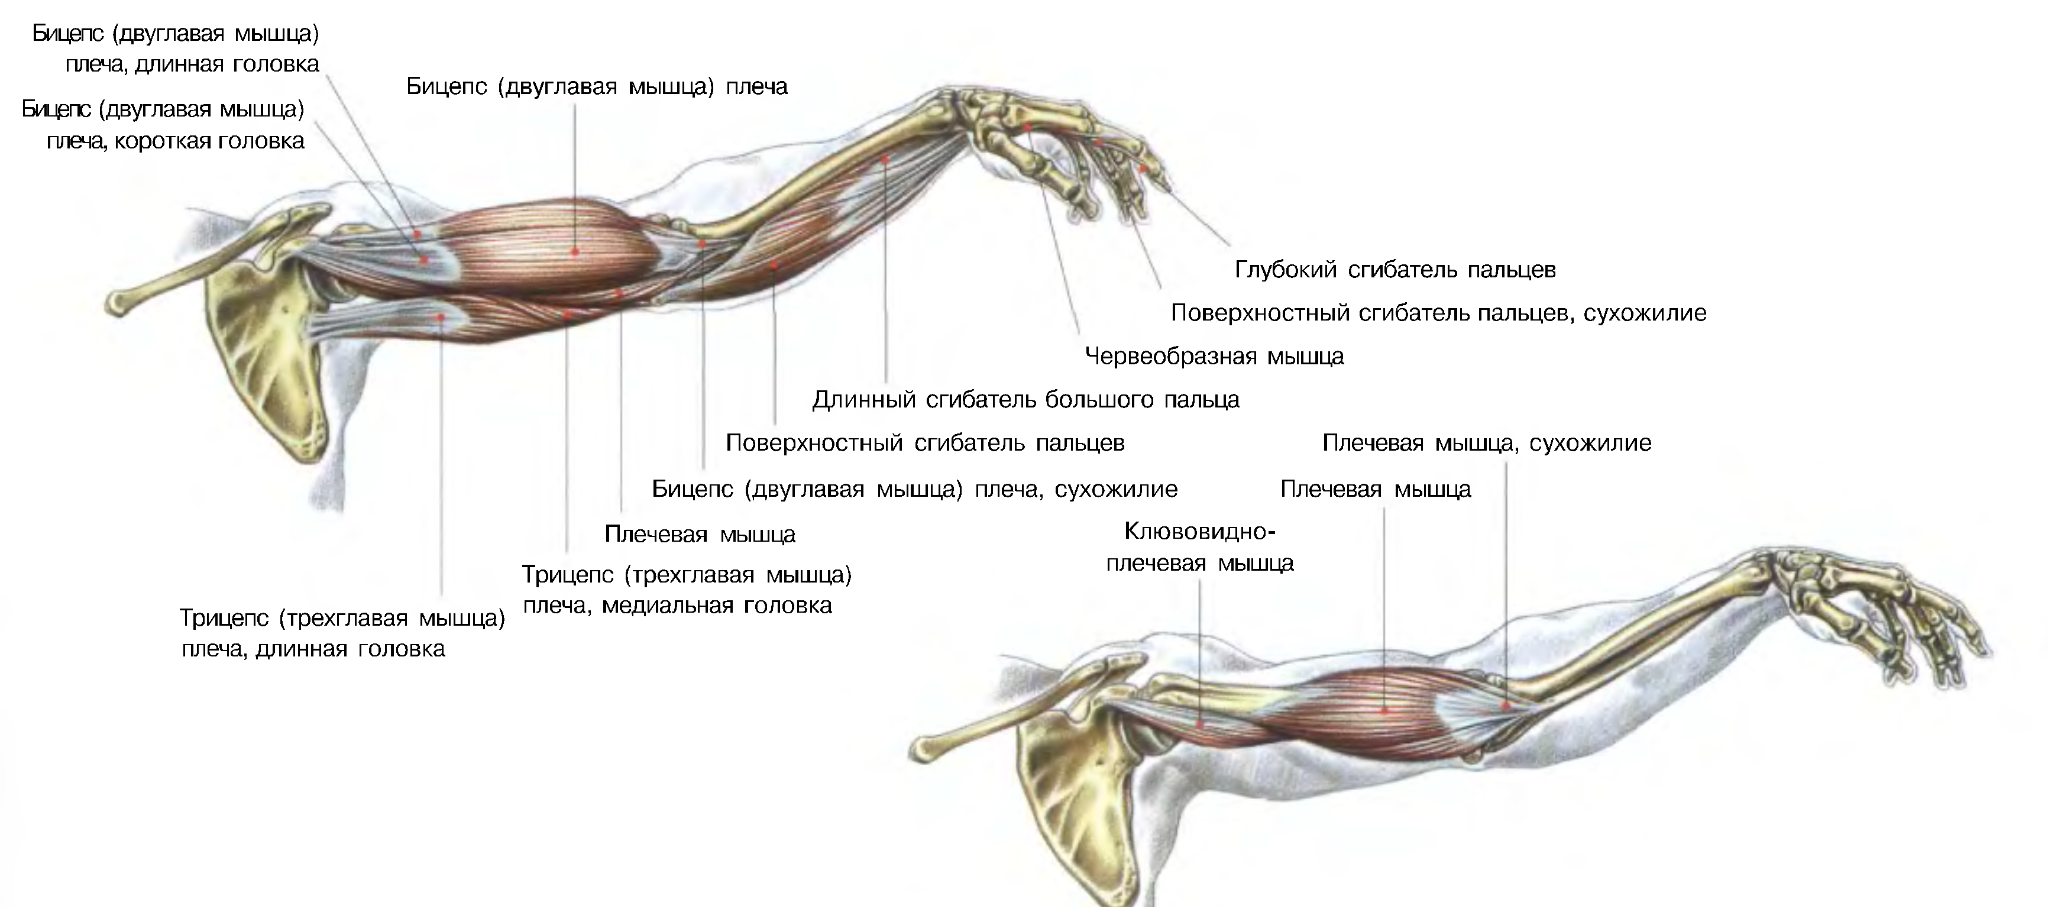 Марк Велла, &laquo;Атлас анатомии для силовых упражнений и фитнеса&raquo;, иллюстрация Джеймса Берранже